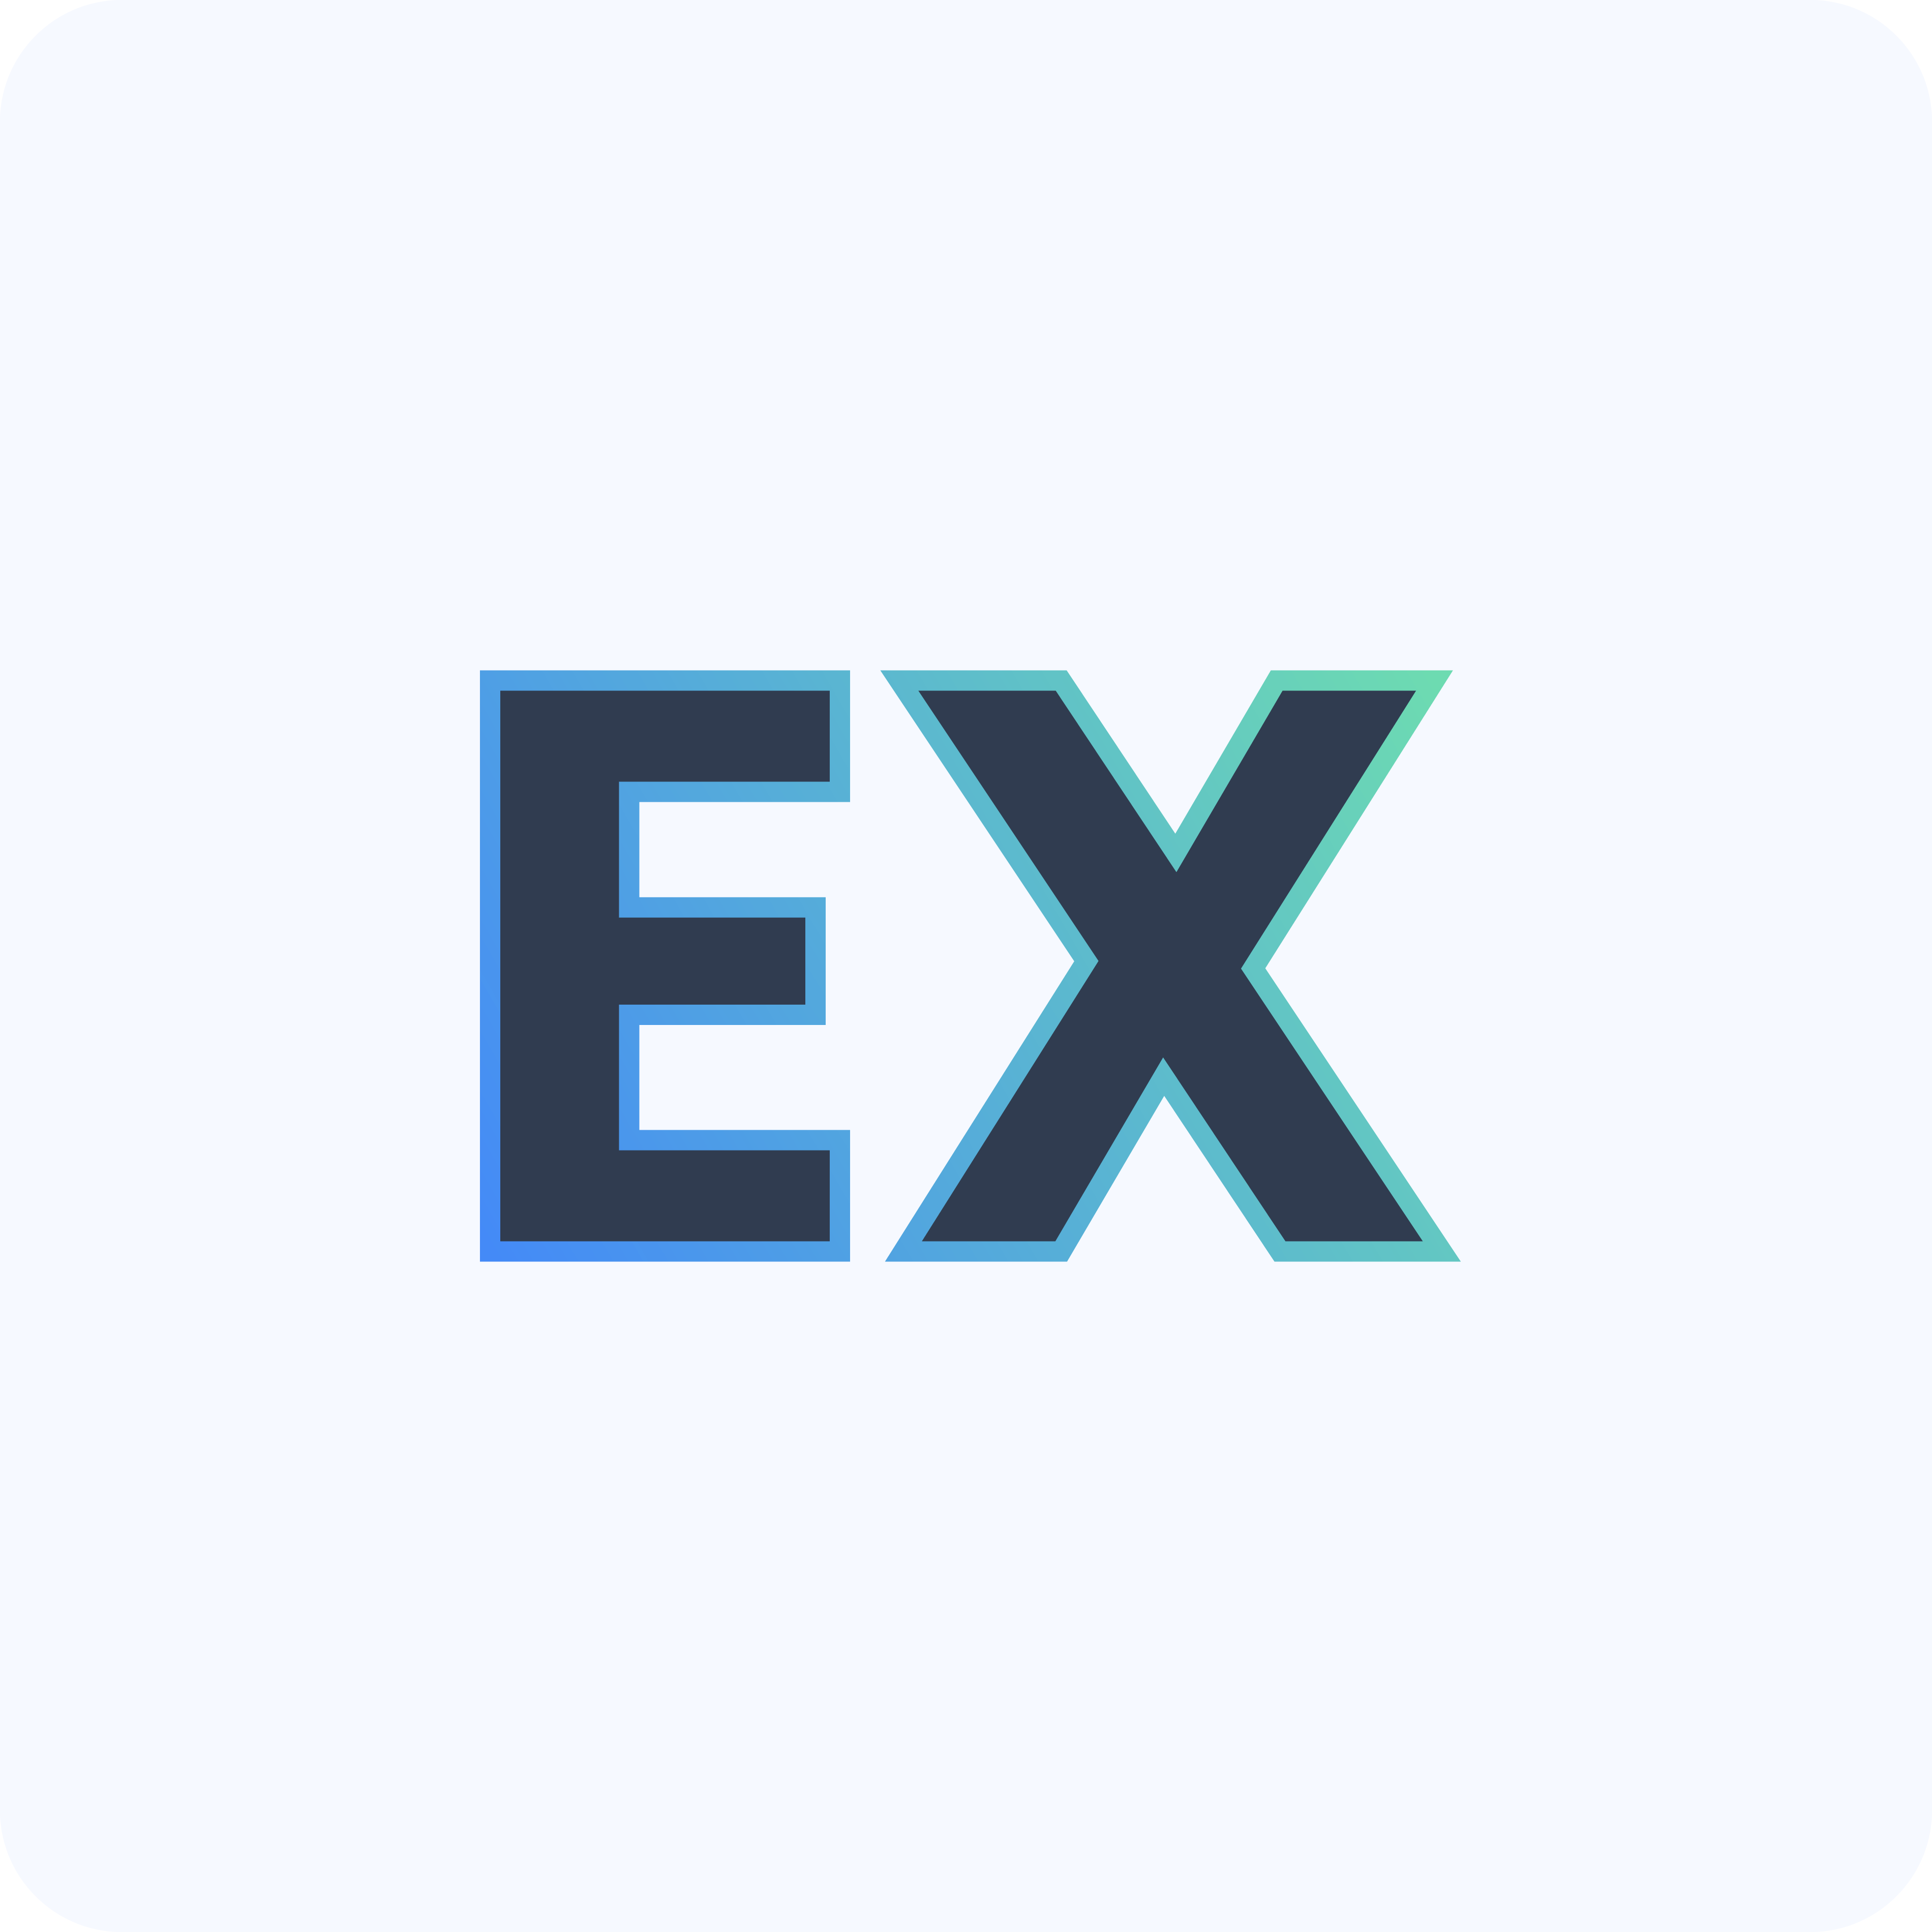 EX - Employee eXperience